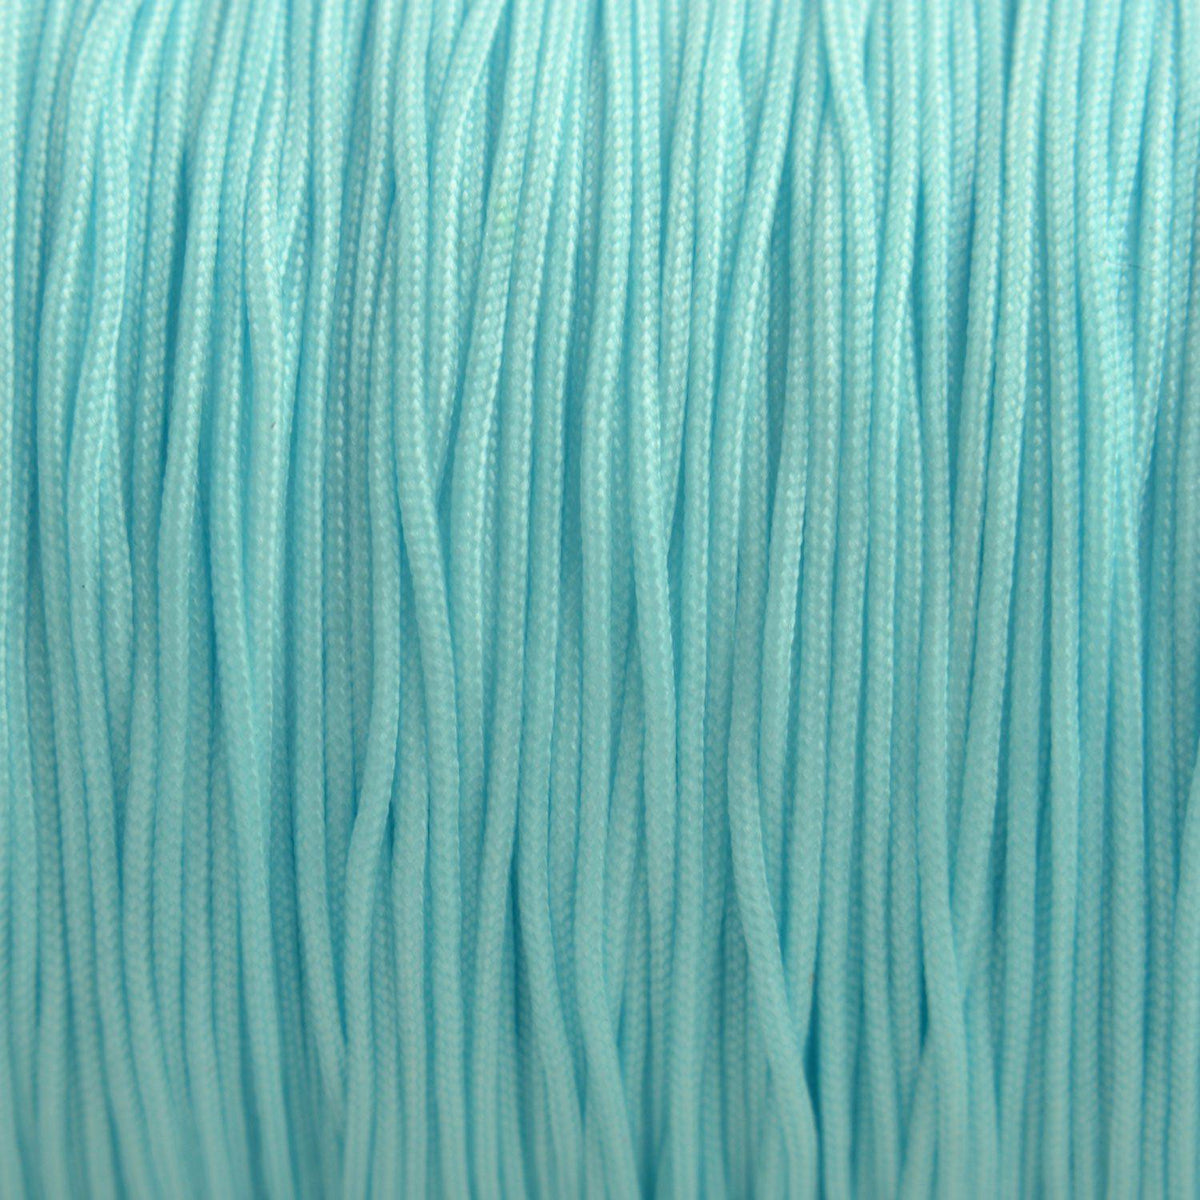 Nylon rattail koord licht aqua 0.8mm - 6 meter-Kraaltjes van Renate